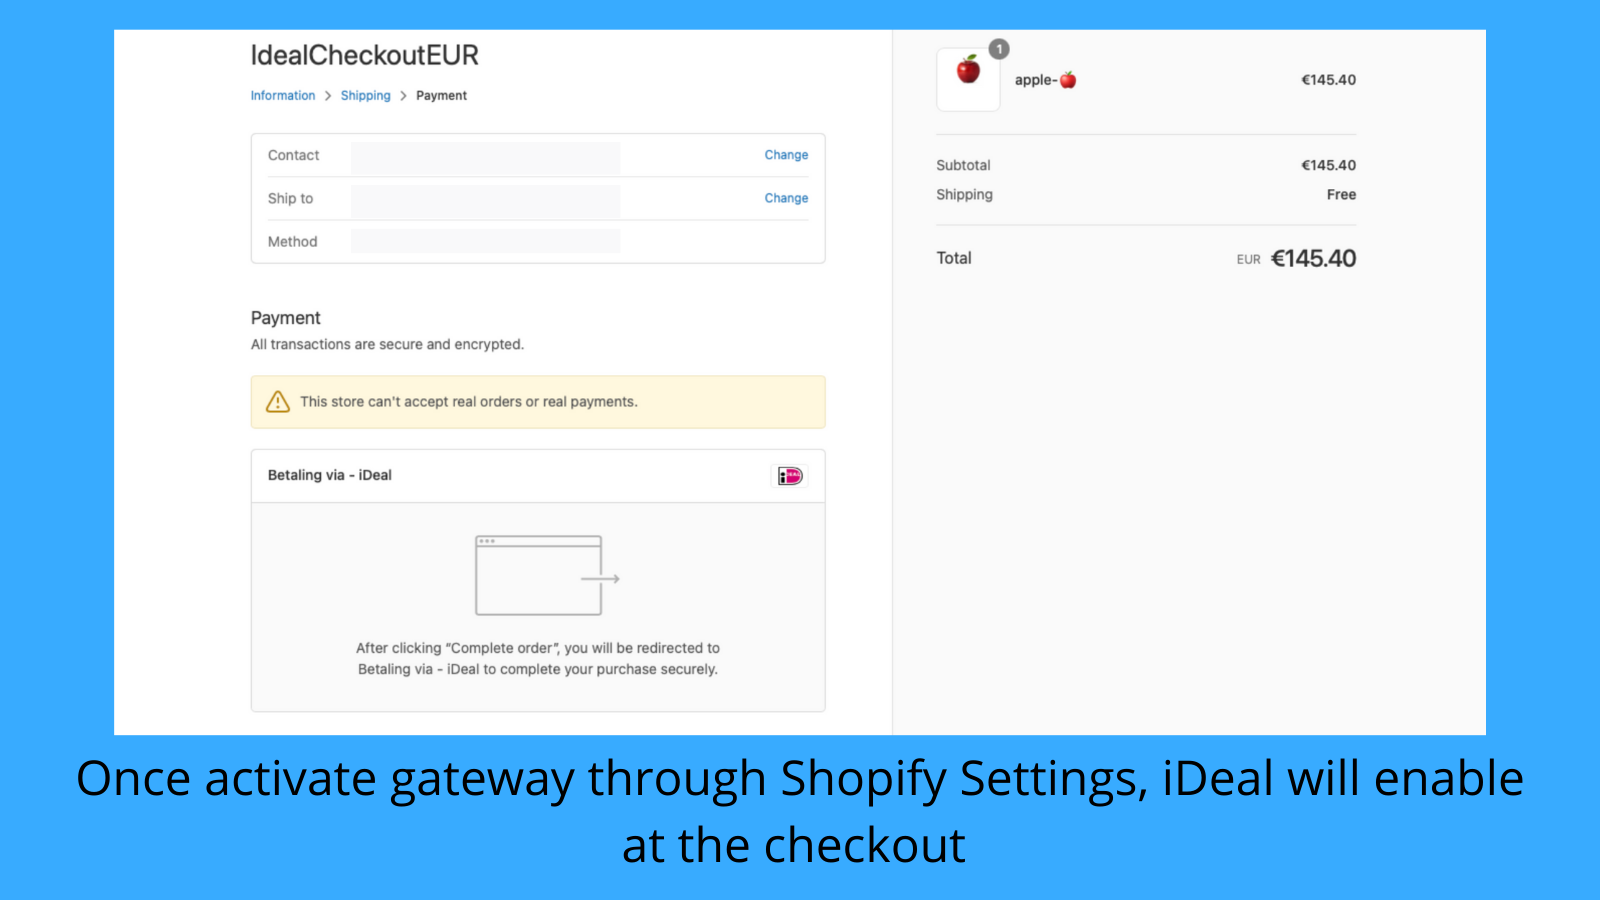 Enable the gateway through Shopify settings.